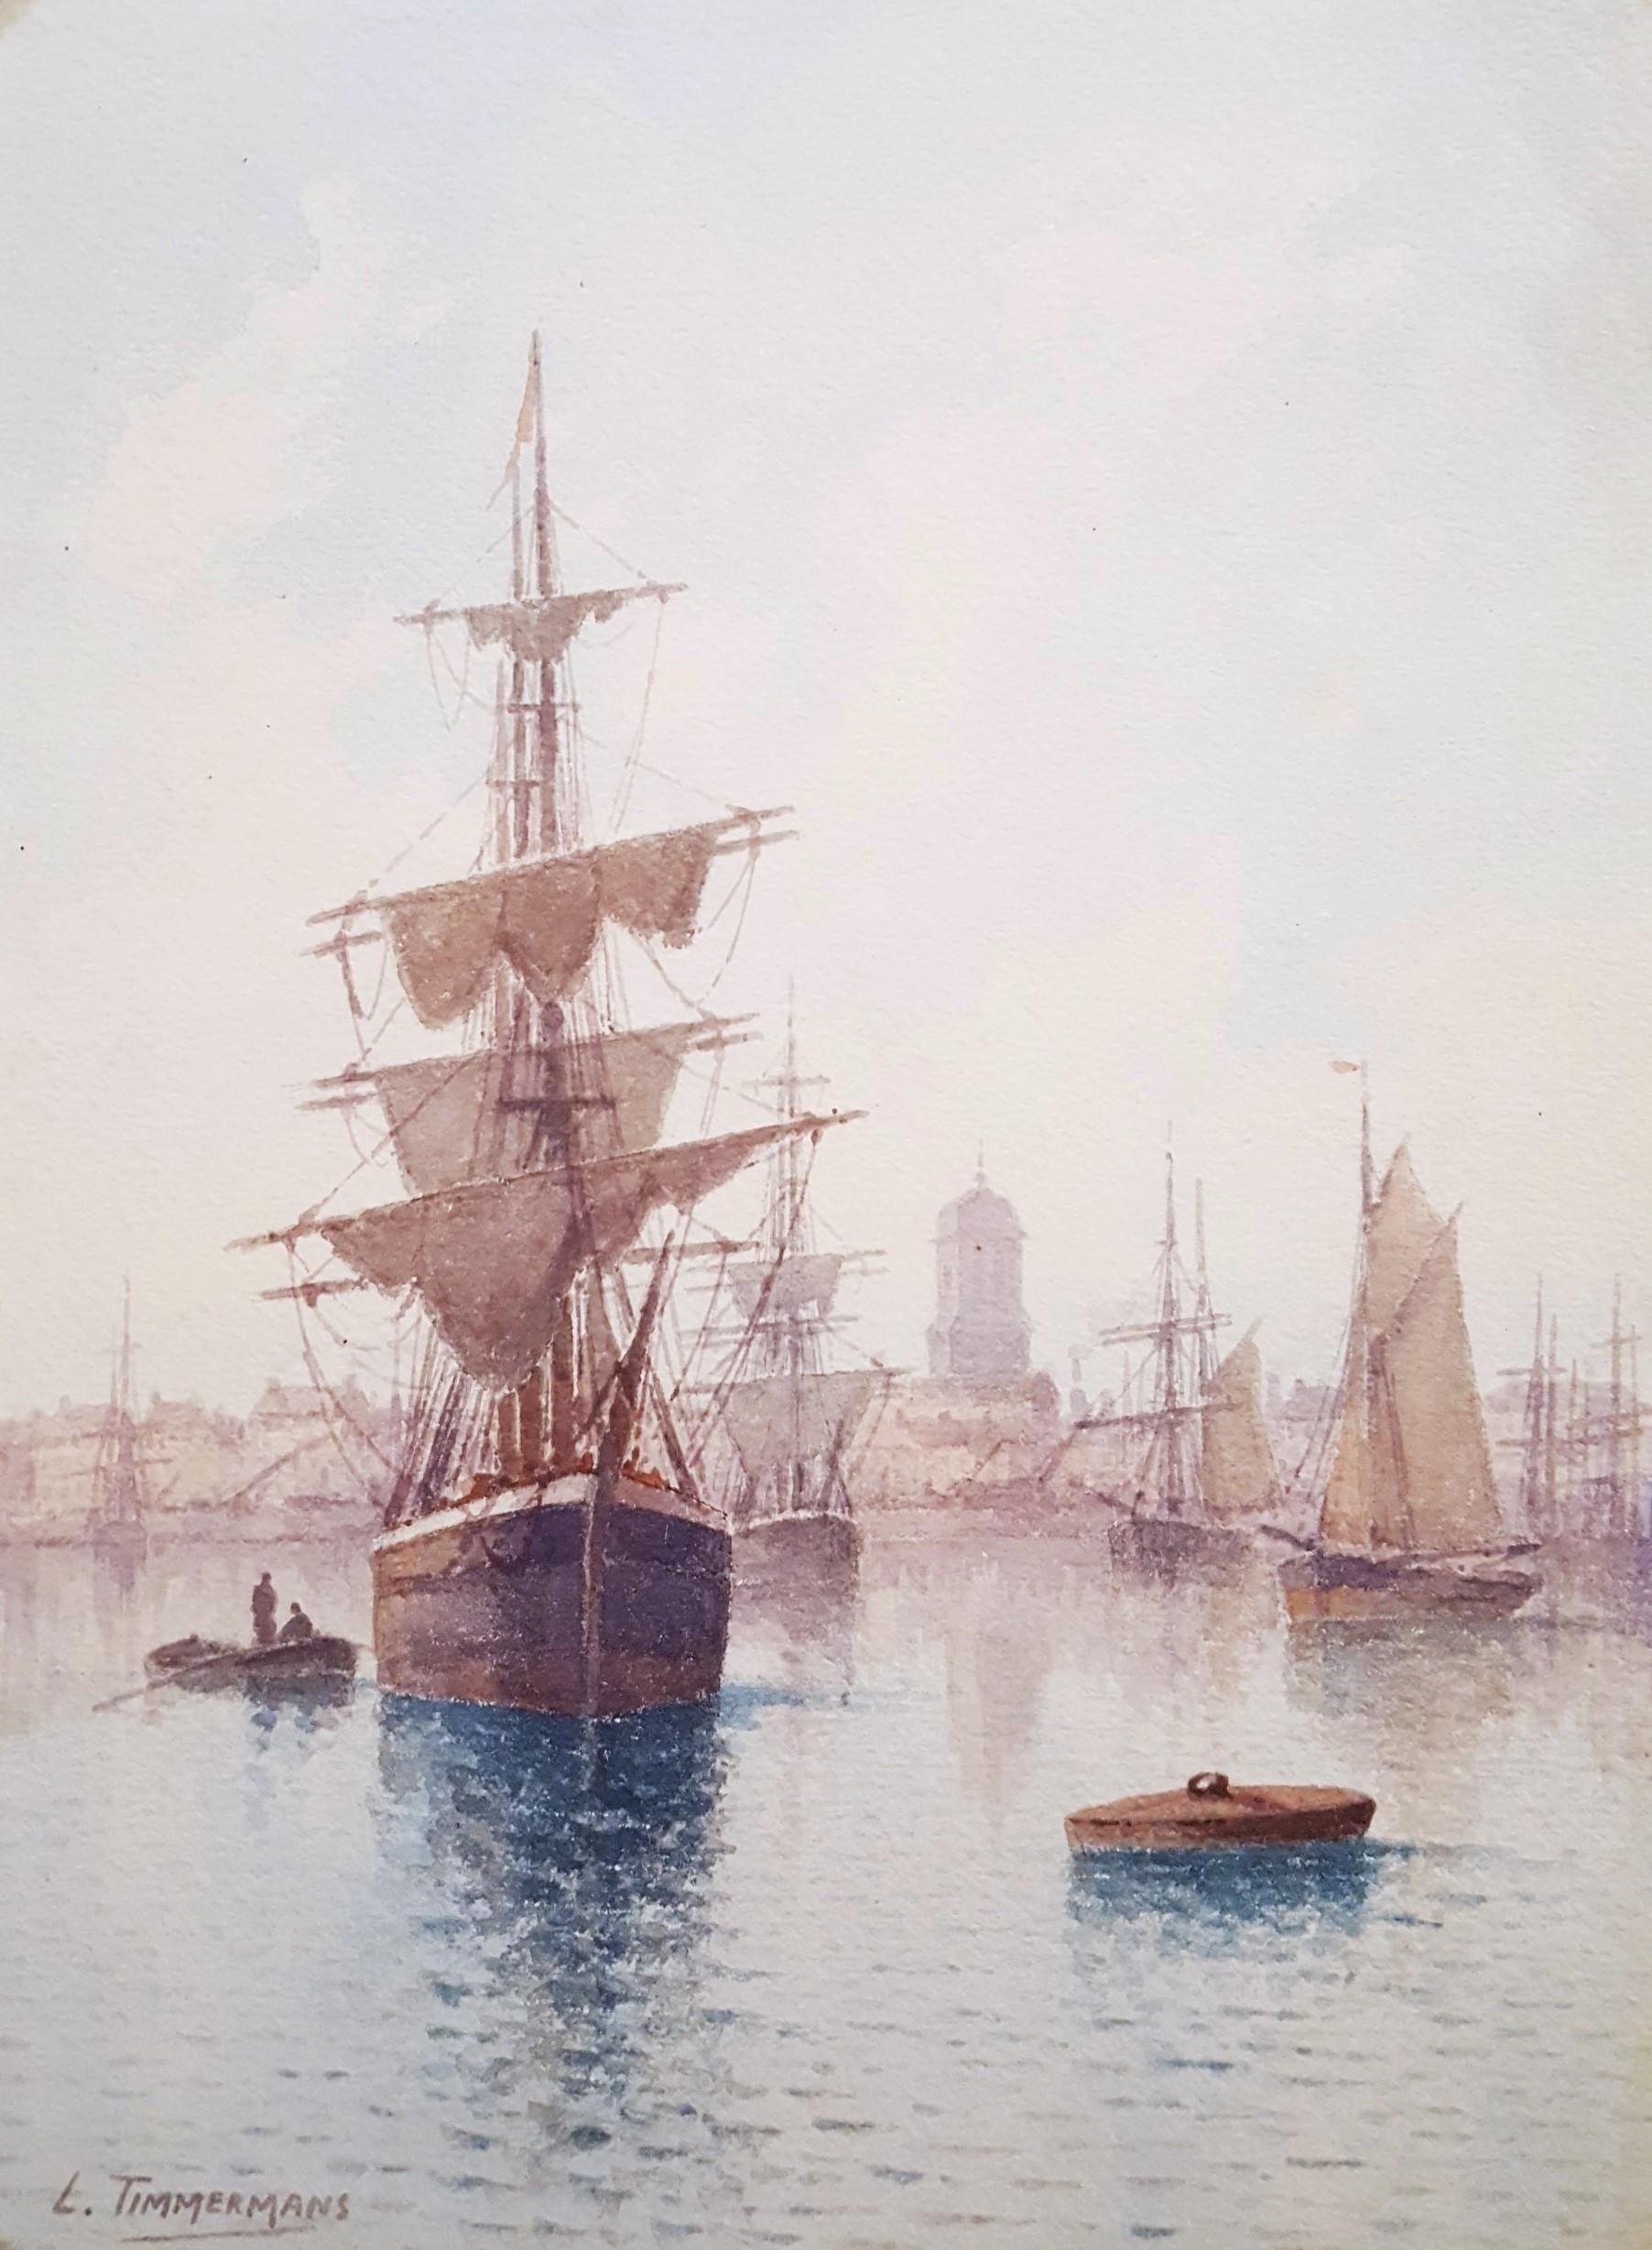 Louis Étienne Timmermans Landscape Art - Voiliers à Quai (Sailboats at the Dock) /// Maritime Seascape Ship Watercolor